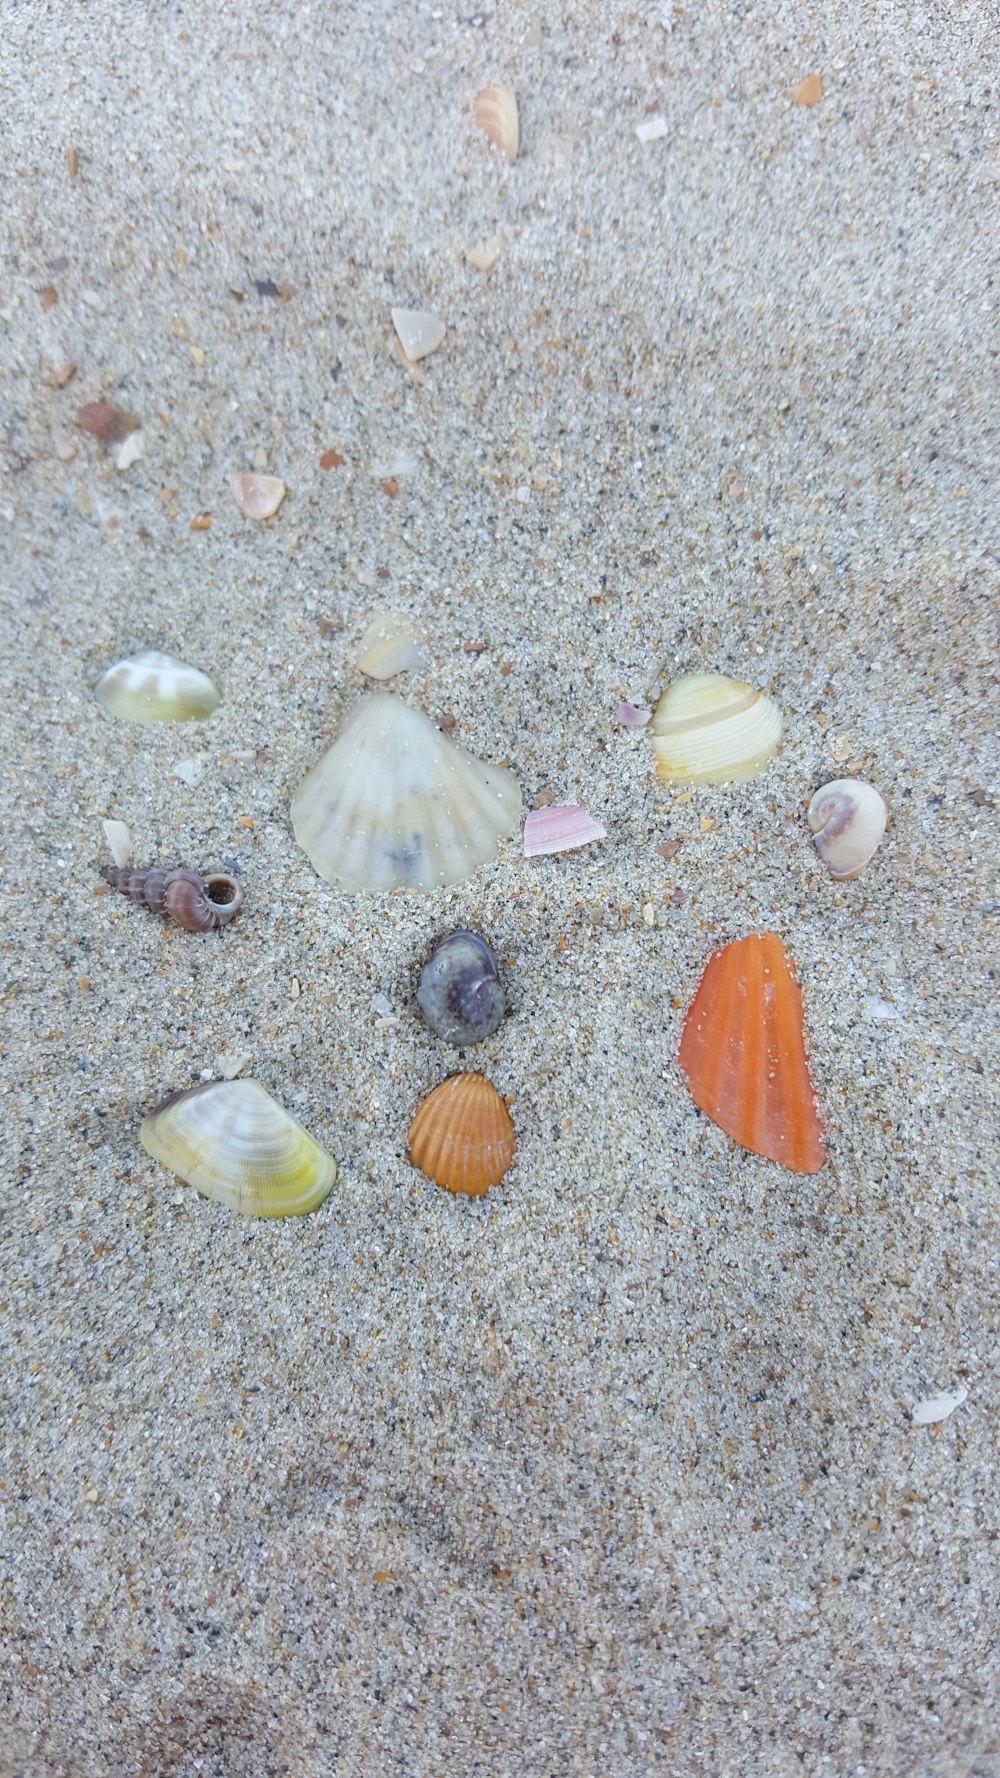 회색 모래 위에 여러 가지 색깔의 조개껍데기